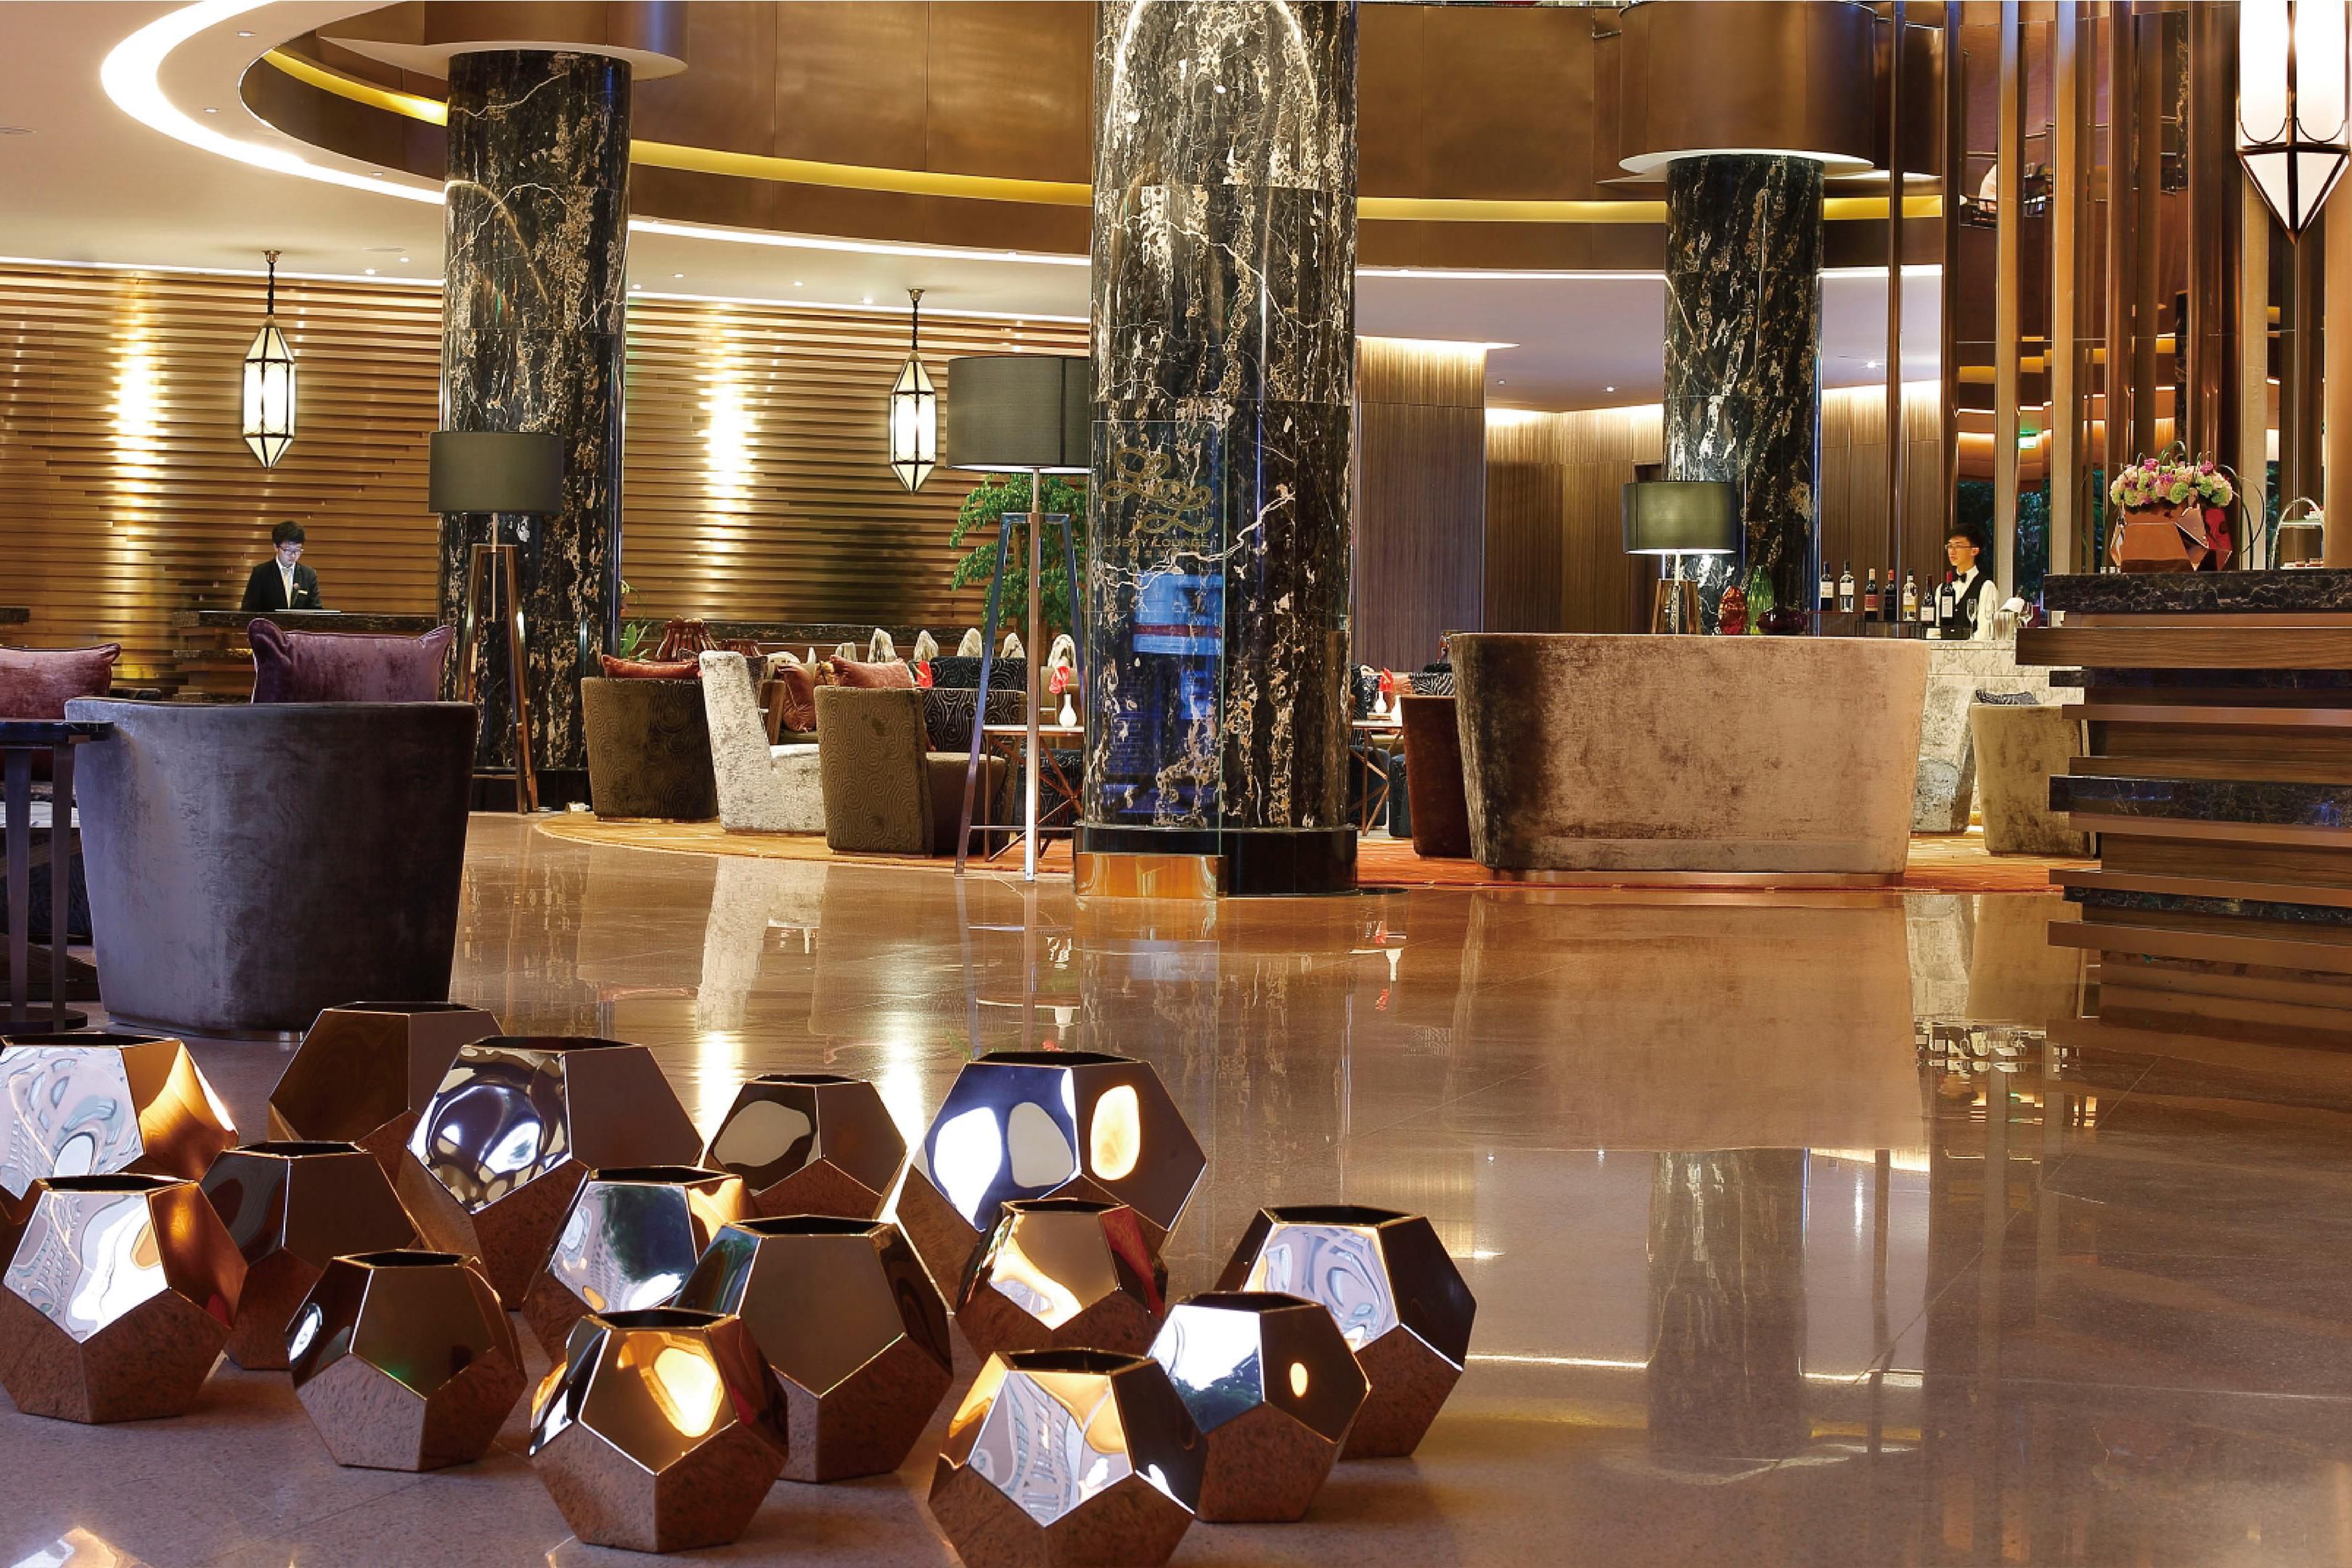 Elegant Hotel Lobby